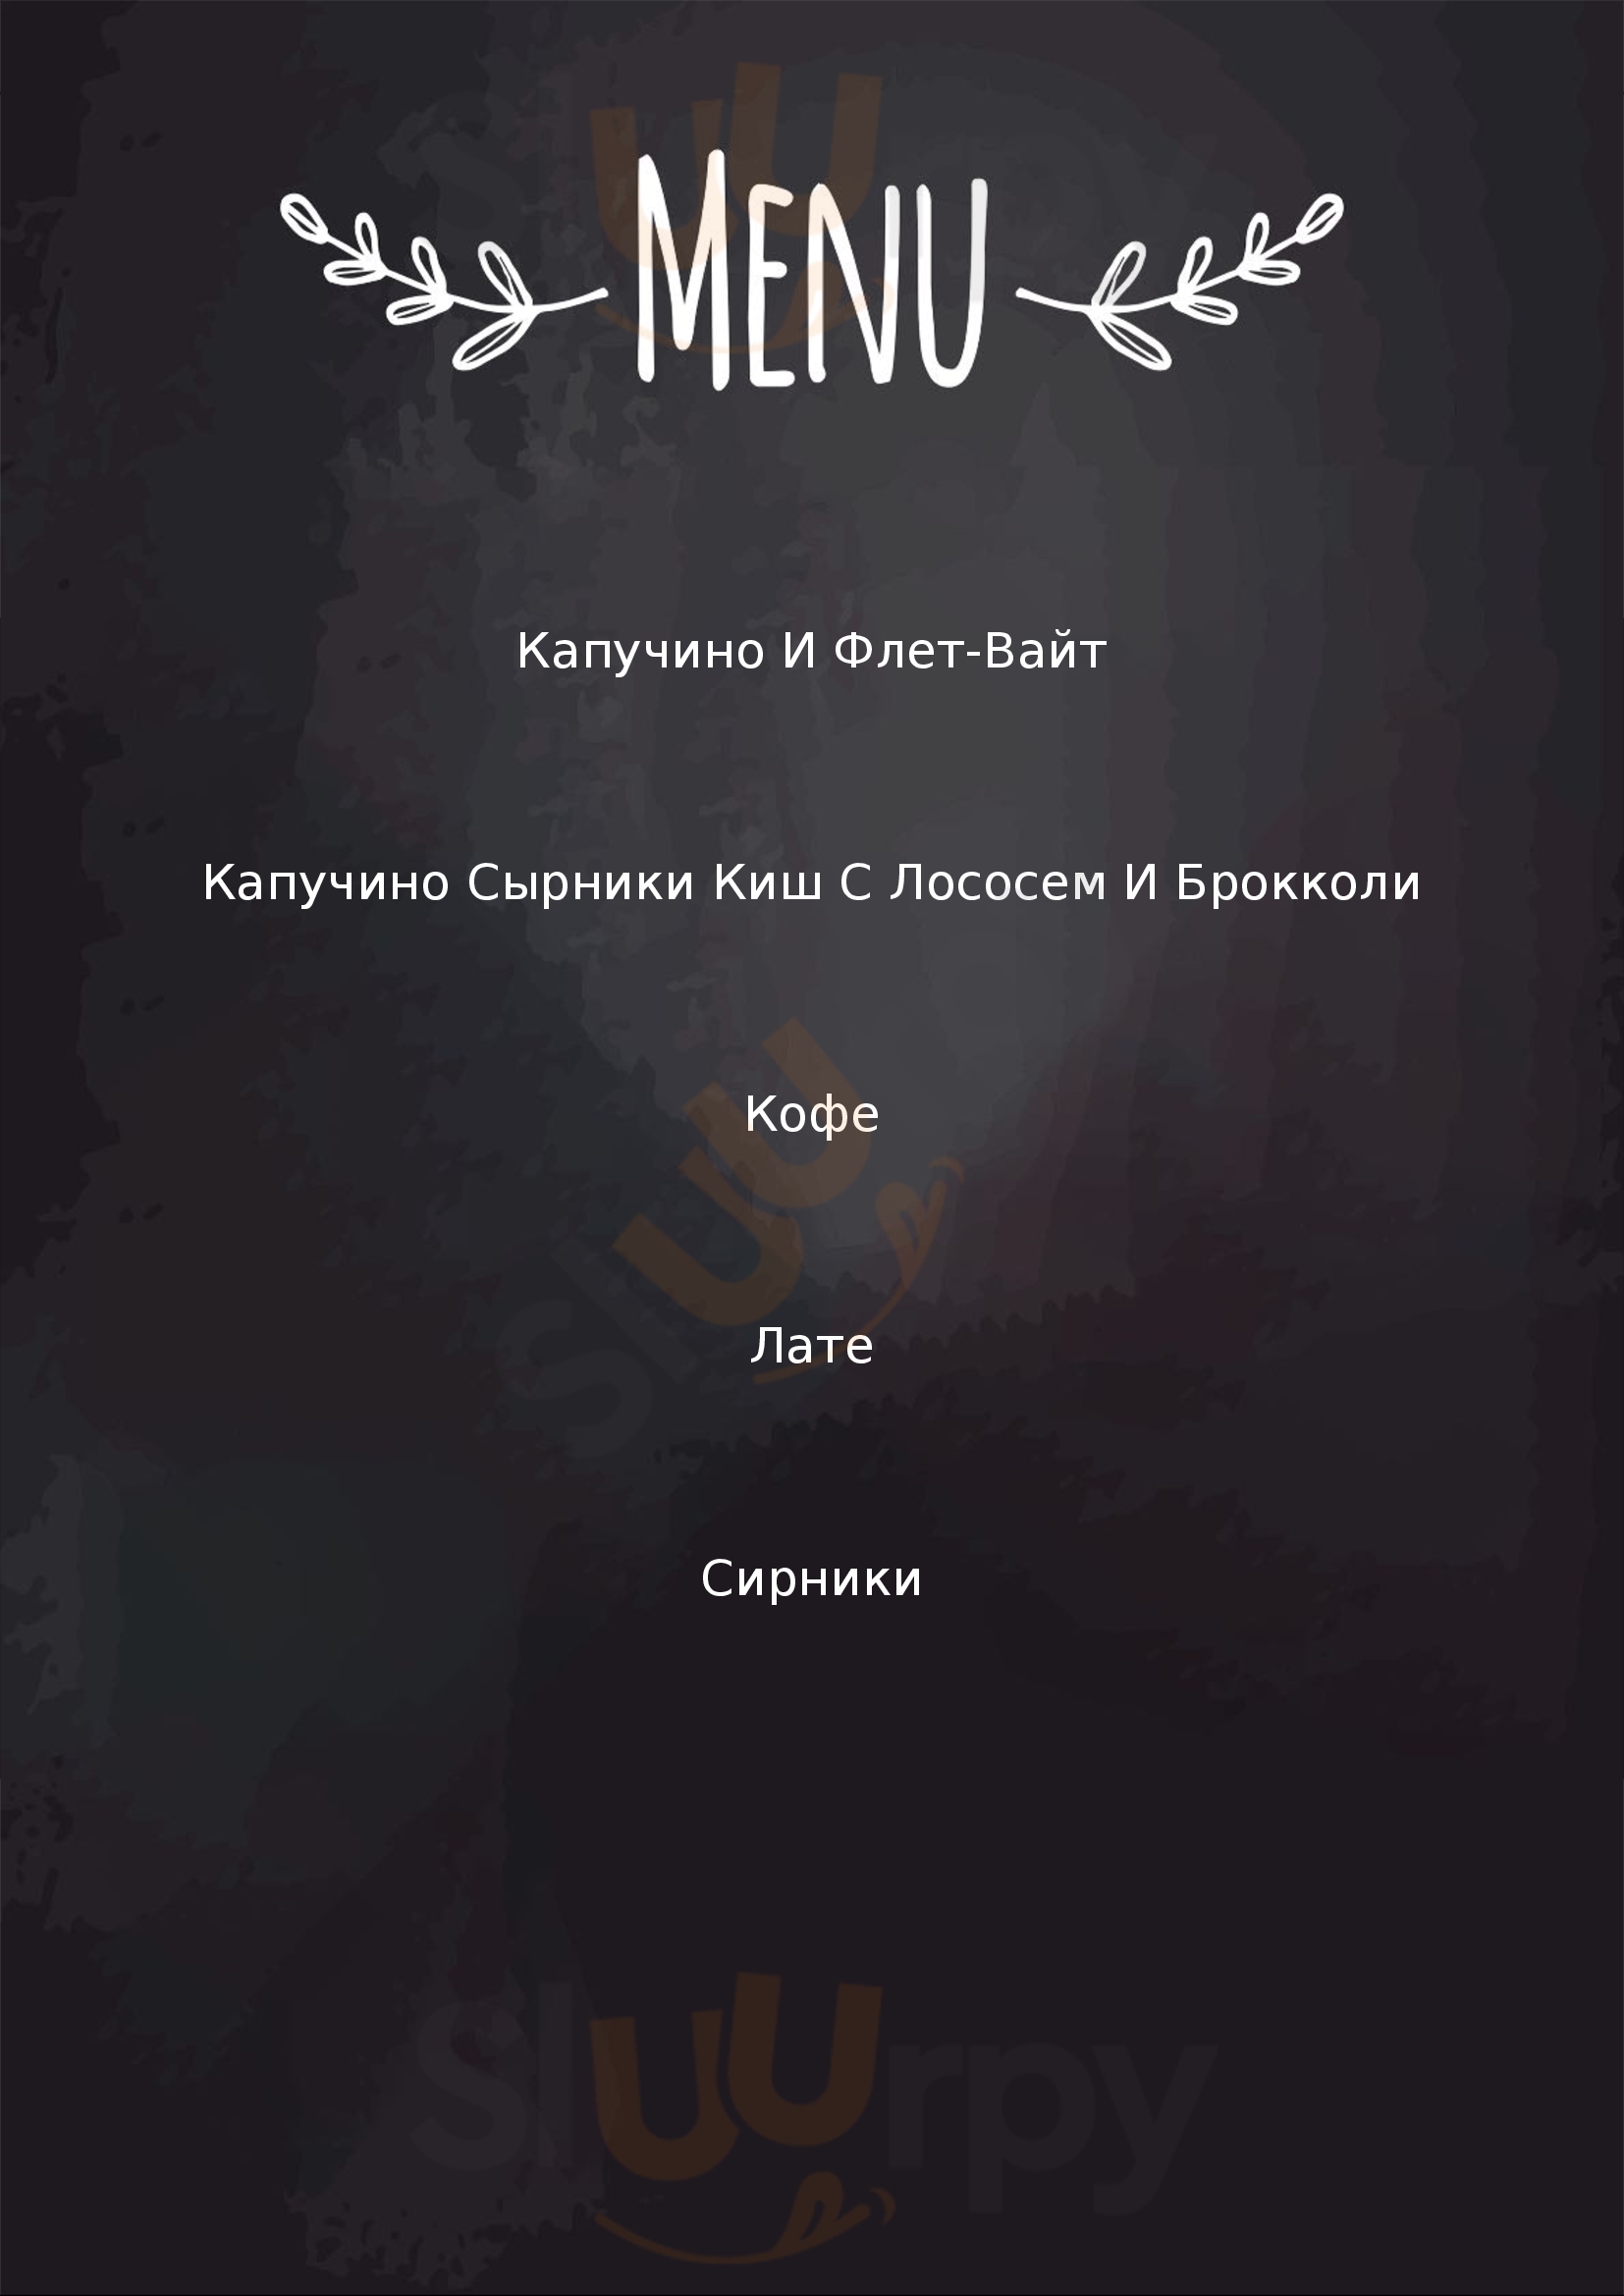 Cafe Lia Dezi Kyiv Menu - 1